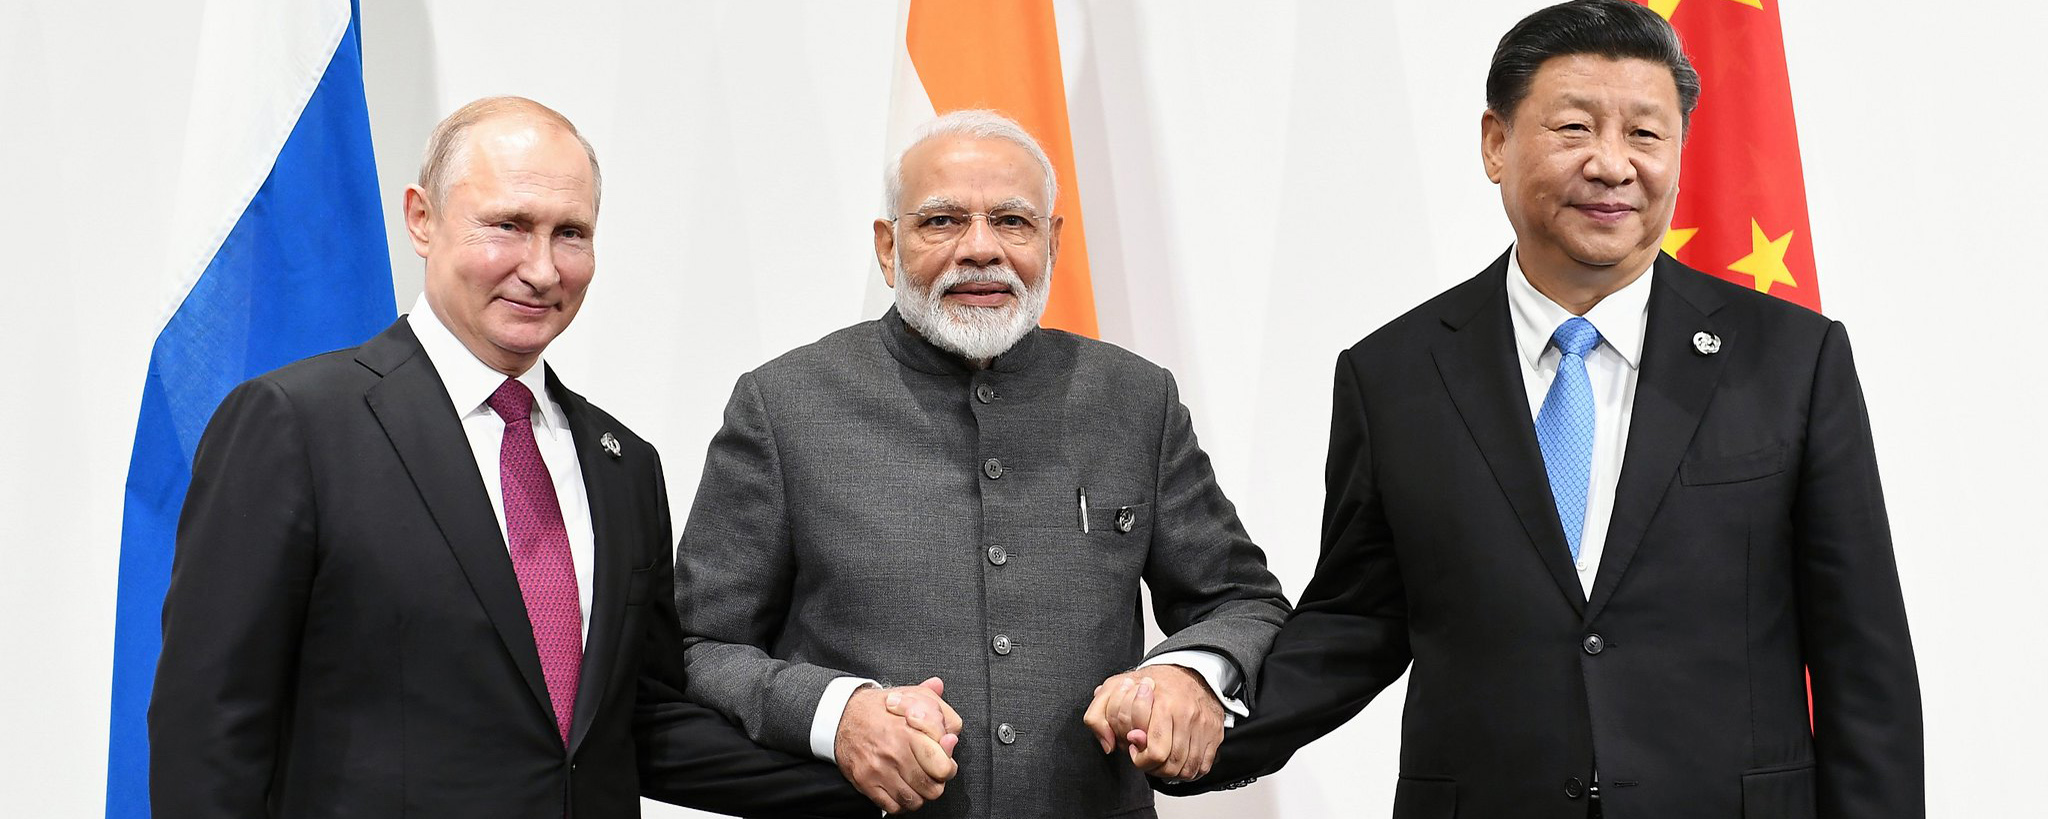 Nihon Keizai: Китай и Индия снижают эффективность антироссийских санкций Запада